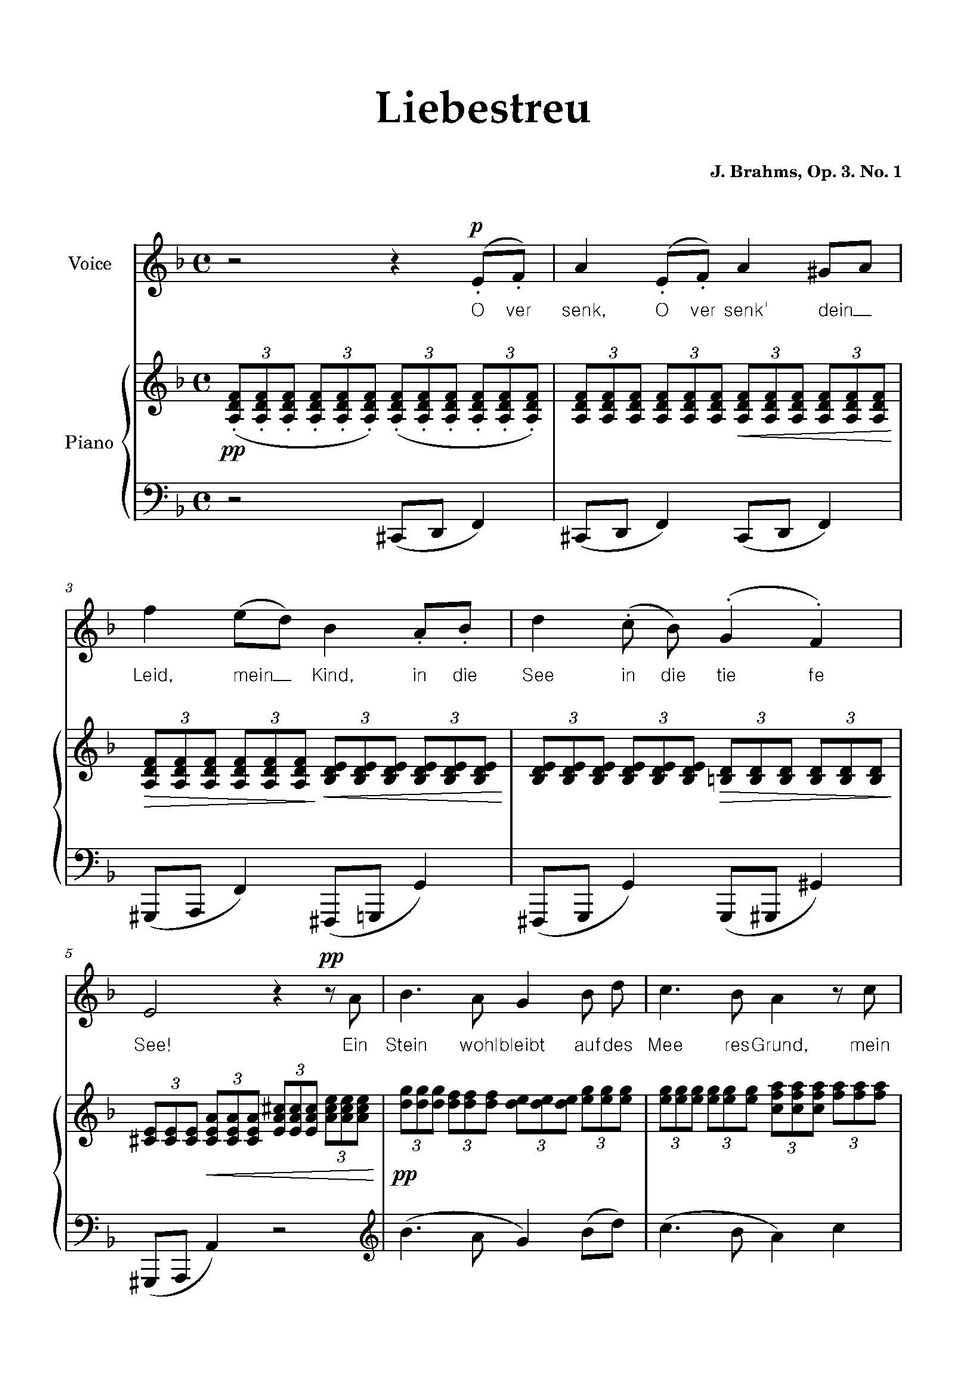 J. Brahms - Liebestreu - dm key (dm key) by MYO